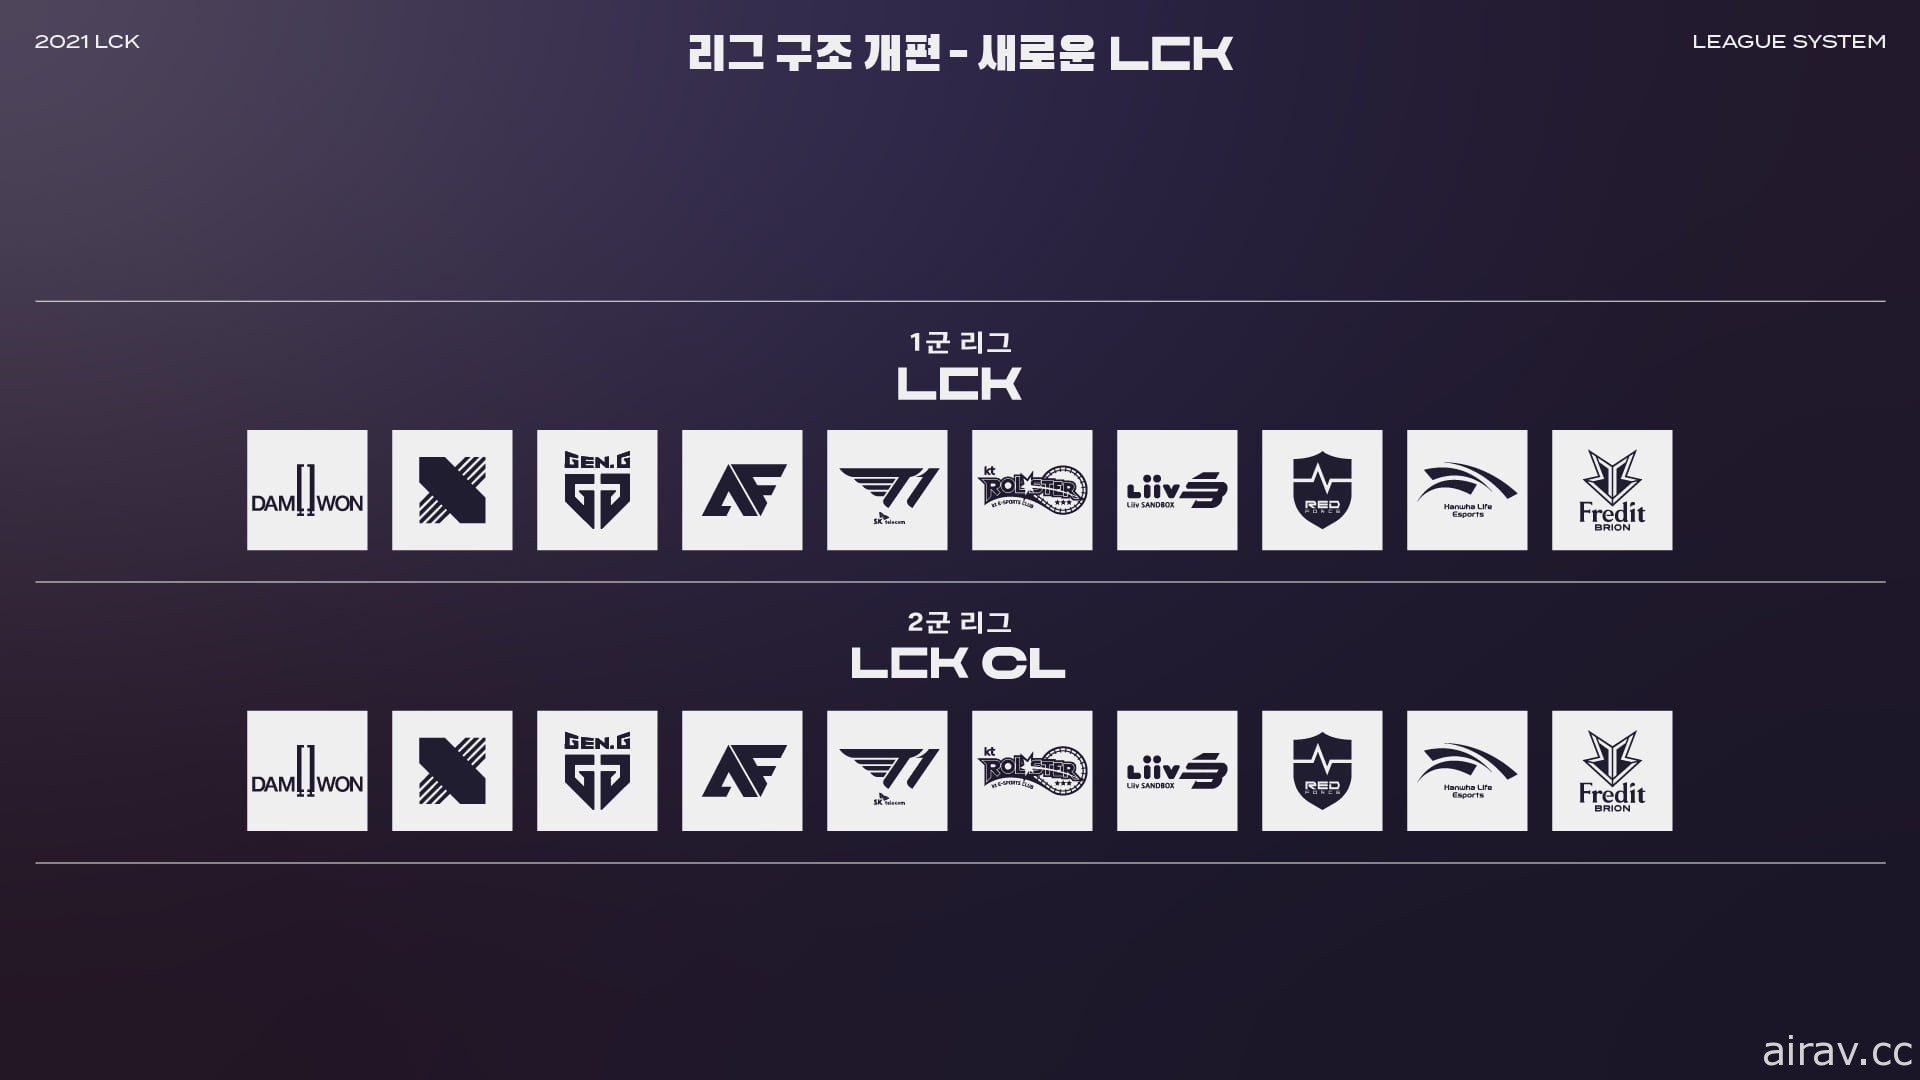 《英雄联盟》LCK 新赛季 1 月 13 日开战 公开各队选手名单与赛程